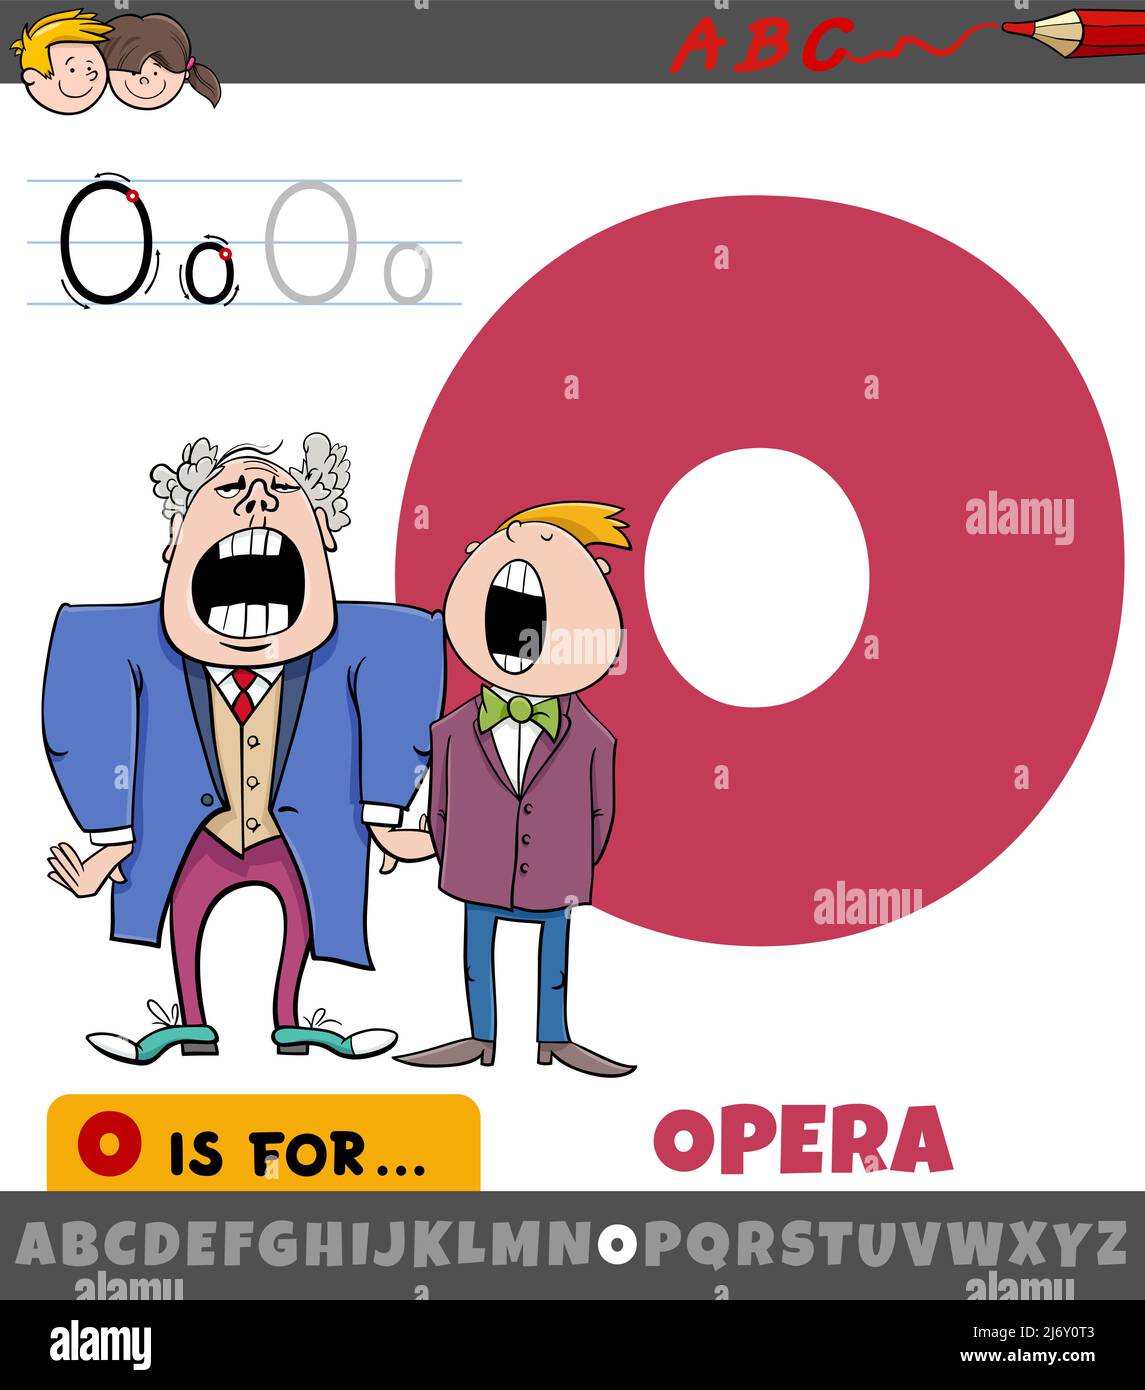 Dessin animé éducatif de la lettre O de l'alphabet avec des personnages chanteurs d'opéra Illustration de Vecteur